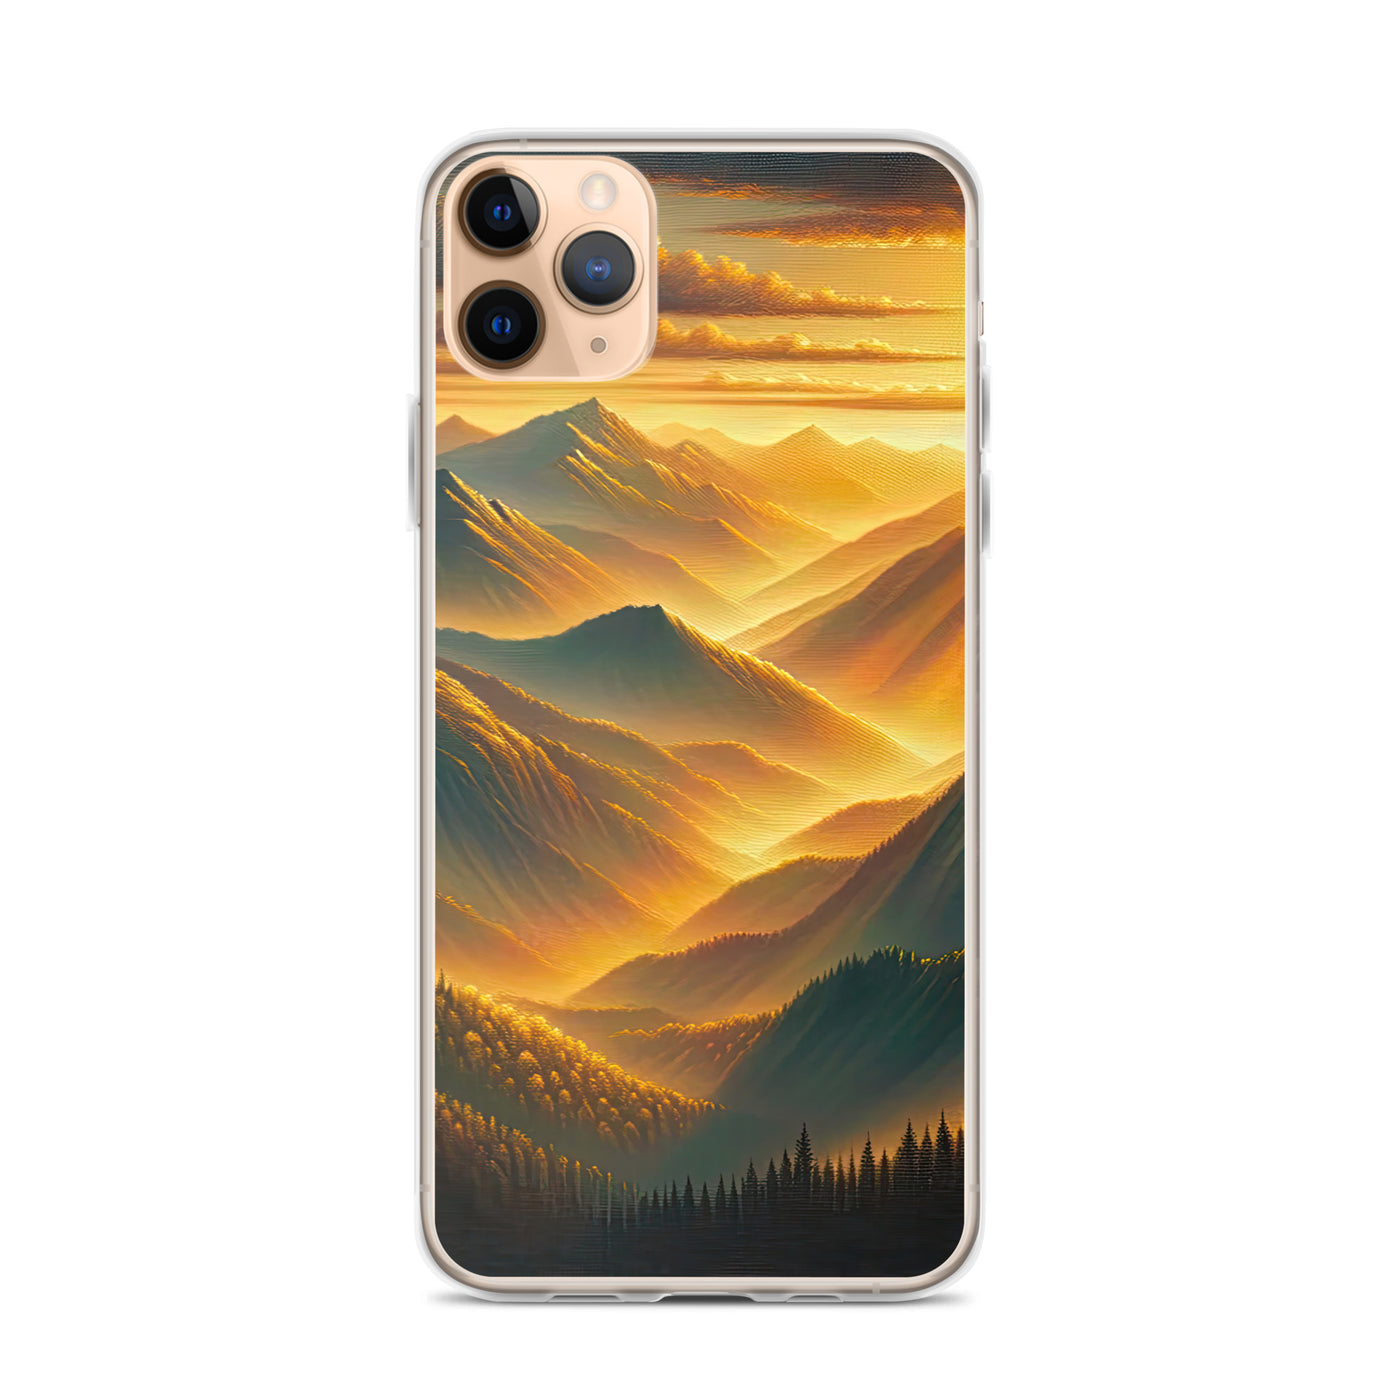 Ölgemälde der Berge in der goldenen Stunde, Sonnenuntergang über warmer Landschaft - iPhone Schutzhülle (durchsichtig) berge xxx yyy zzz iPhone 11 Pro Max